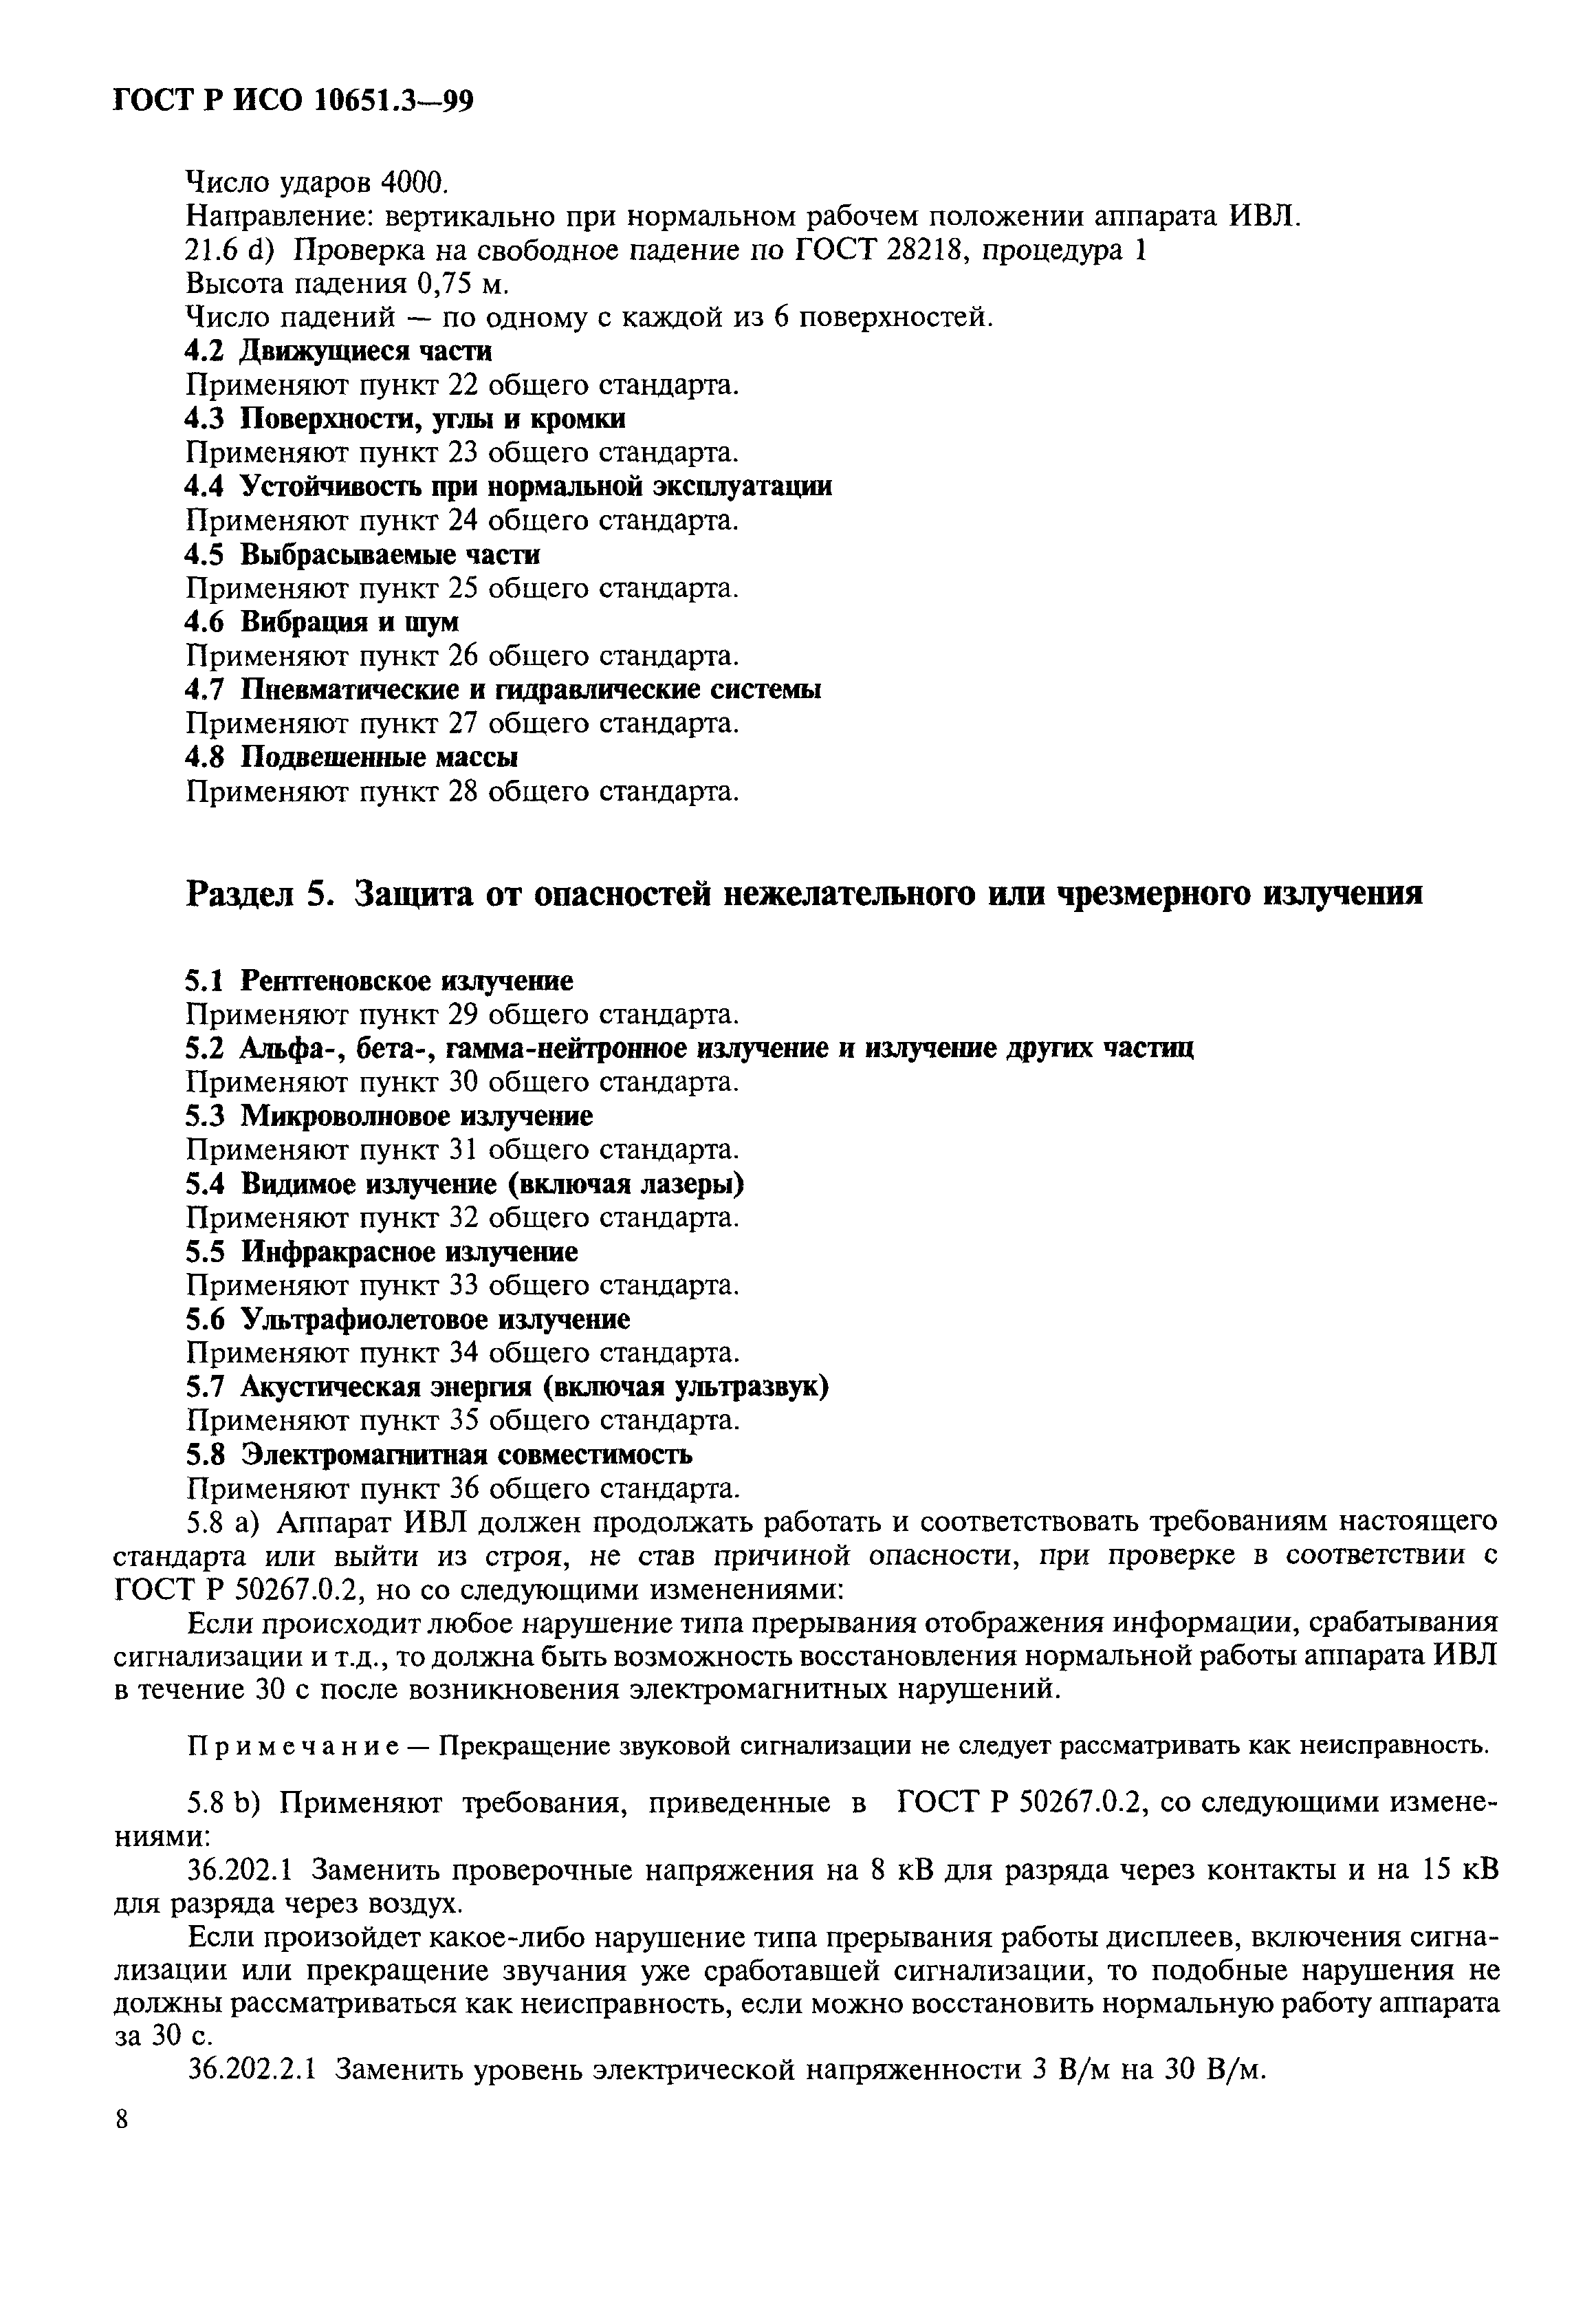 ГОСТ Р ИСО 10651.3-99